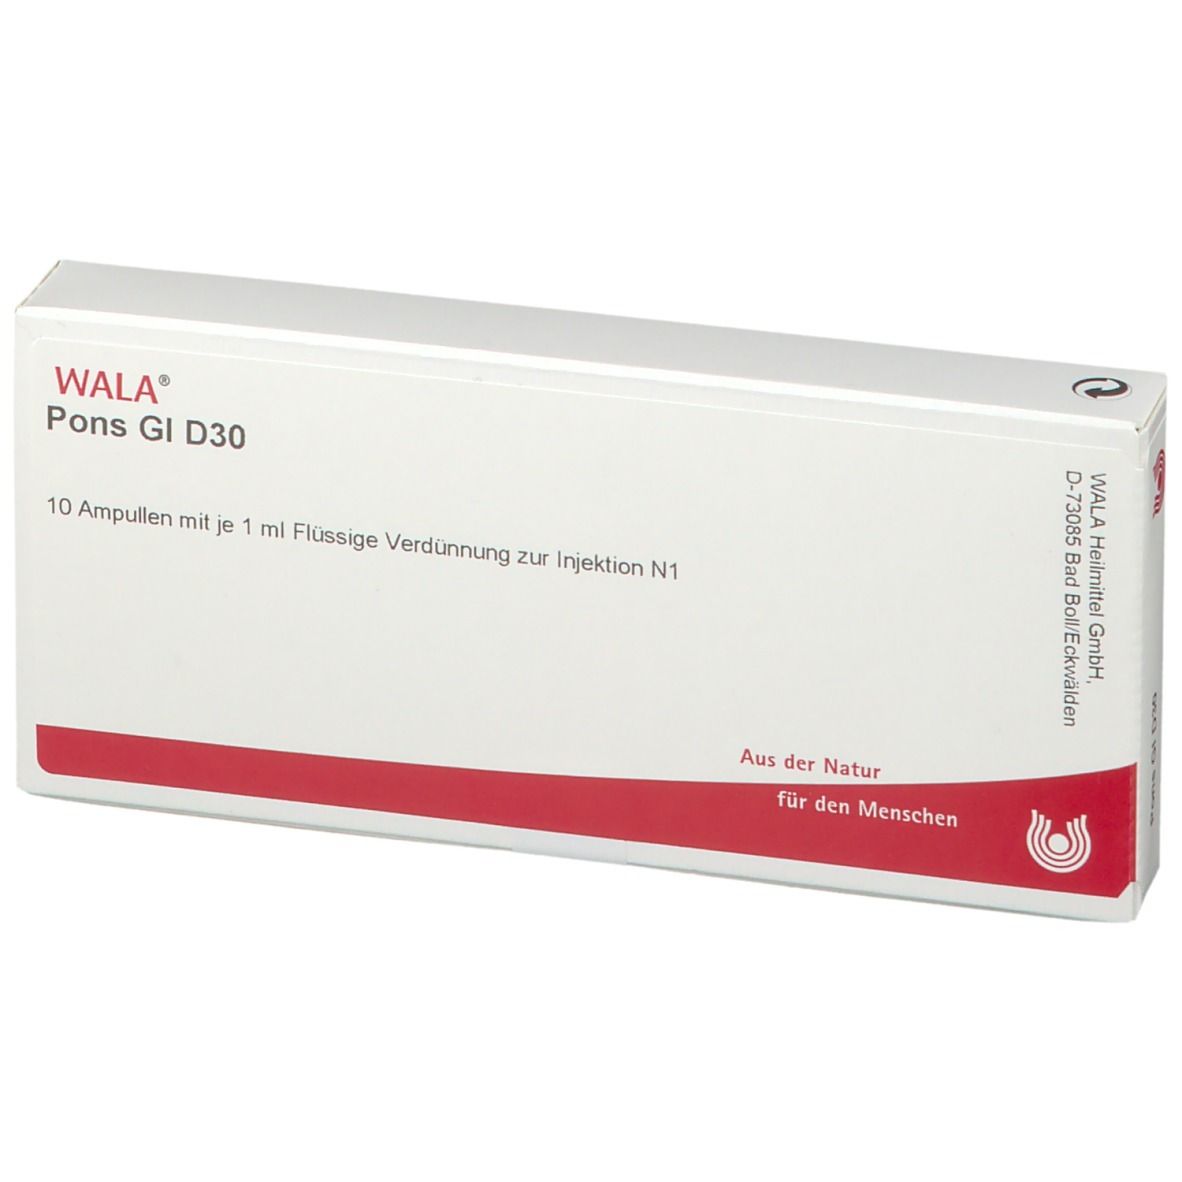 WALA® Pons Gl D 30